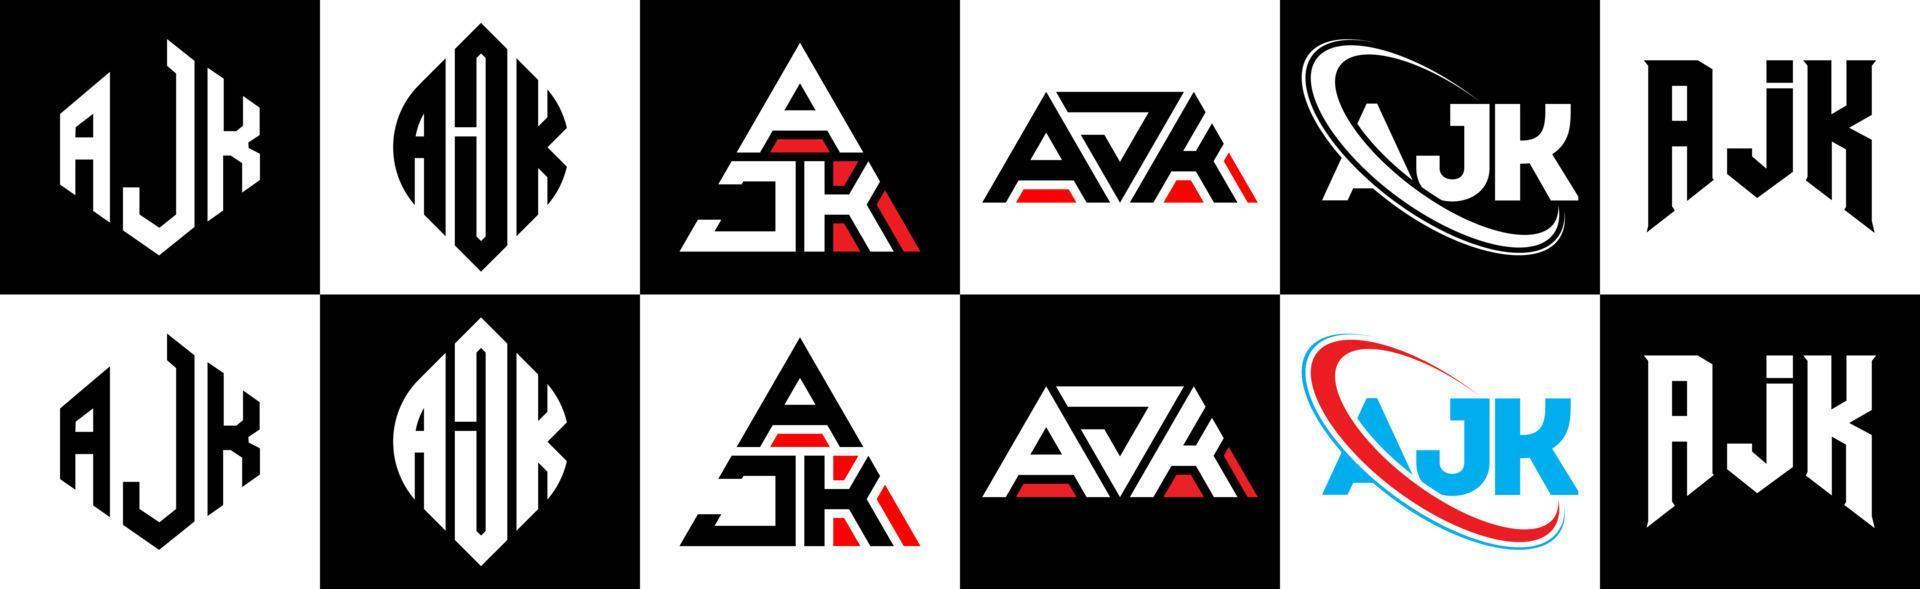 création de logo de lettre ajk en six styles. ajk polygone, cercle, triangle, hexagone, style plat et simple avec logo de lettre de variation de couleur noir et blanc dans un plan de travail. logo minimaliste et classique ajk vecteur